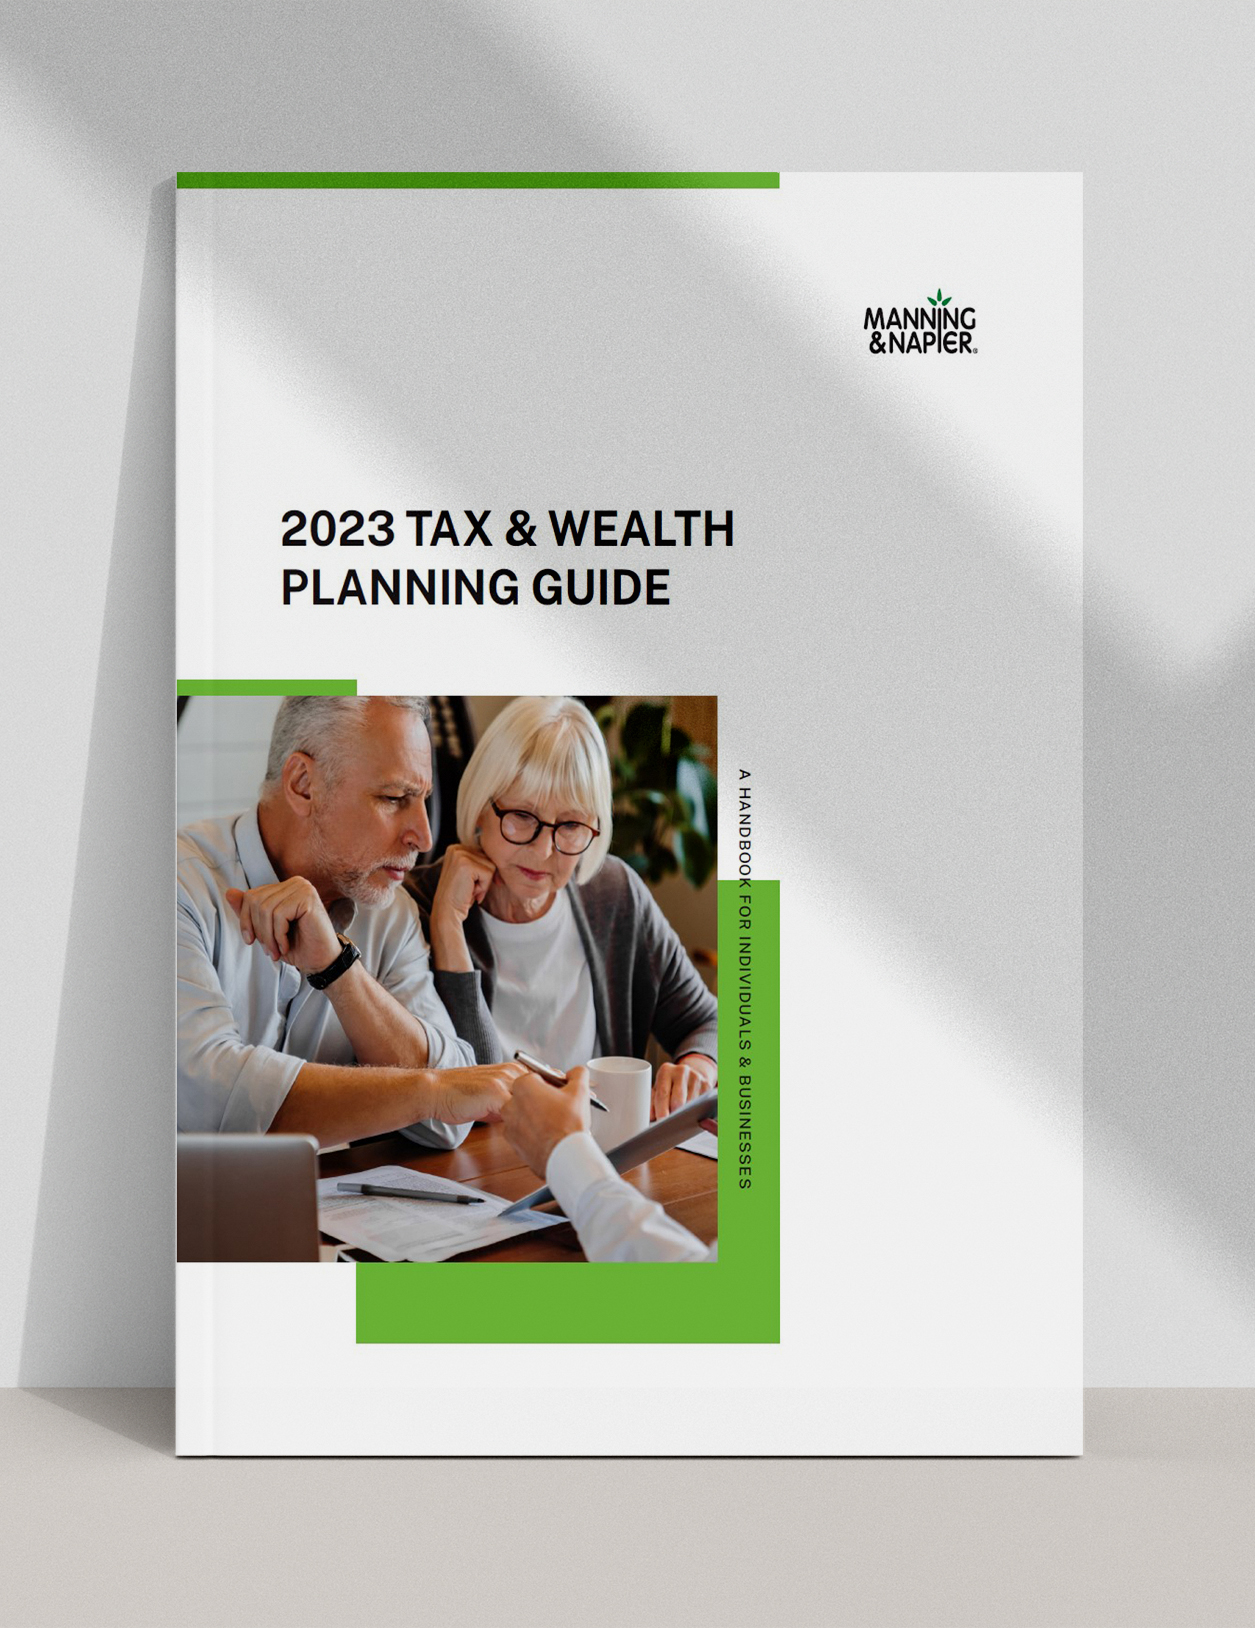 wm-tax-guide-2023-mockup-lp-header